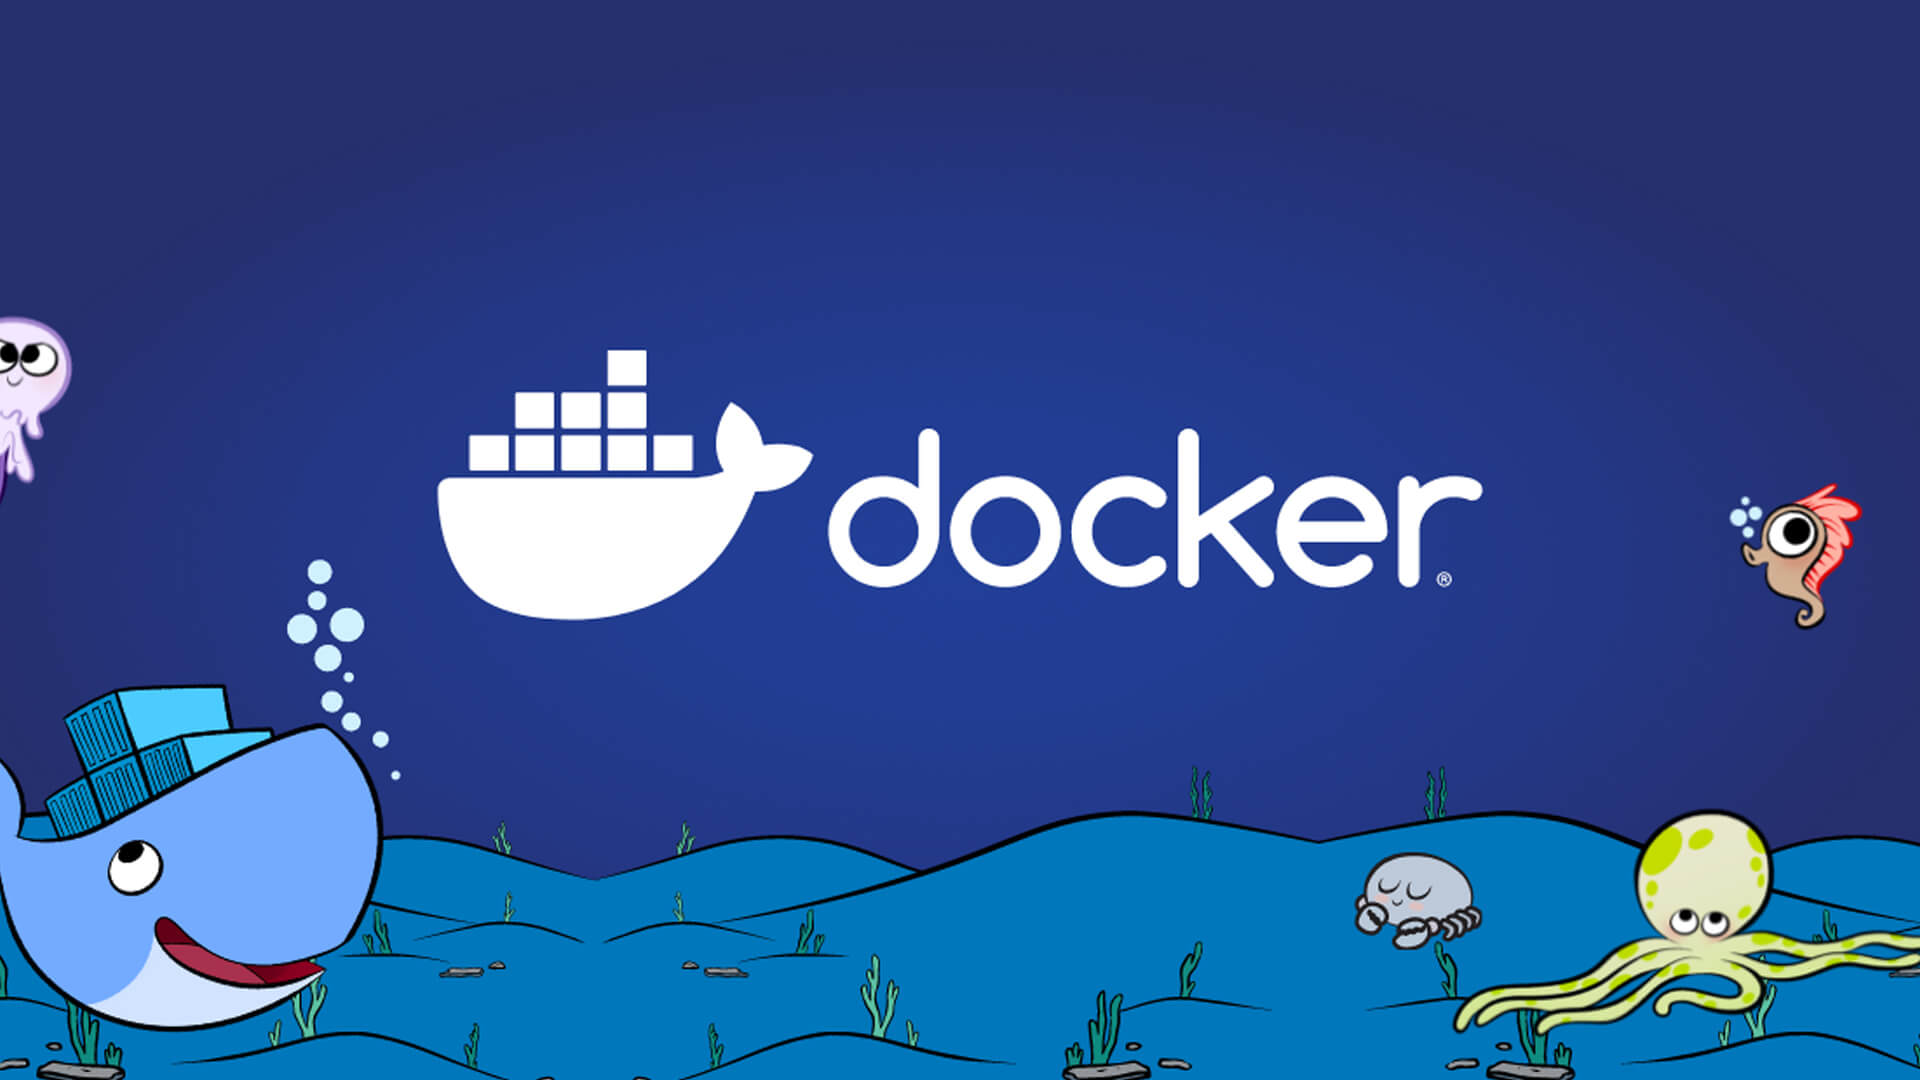 Docker for Application Development